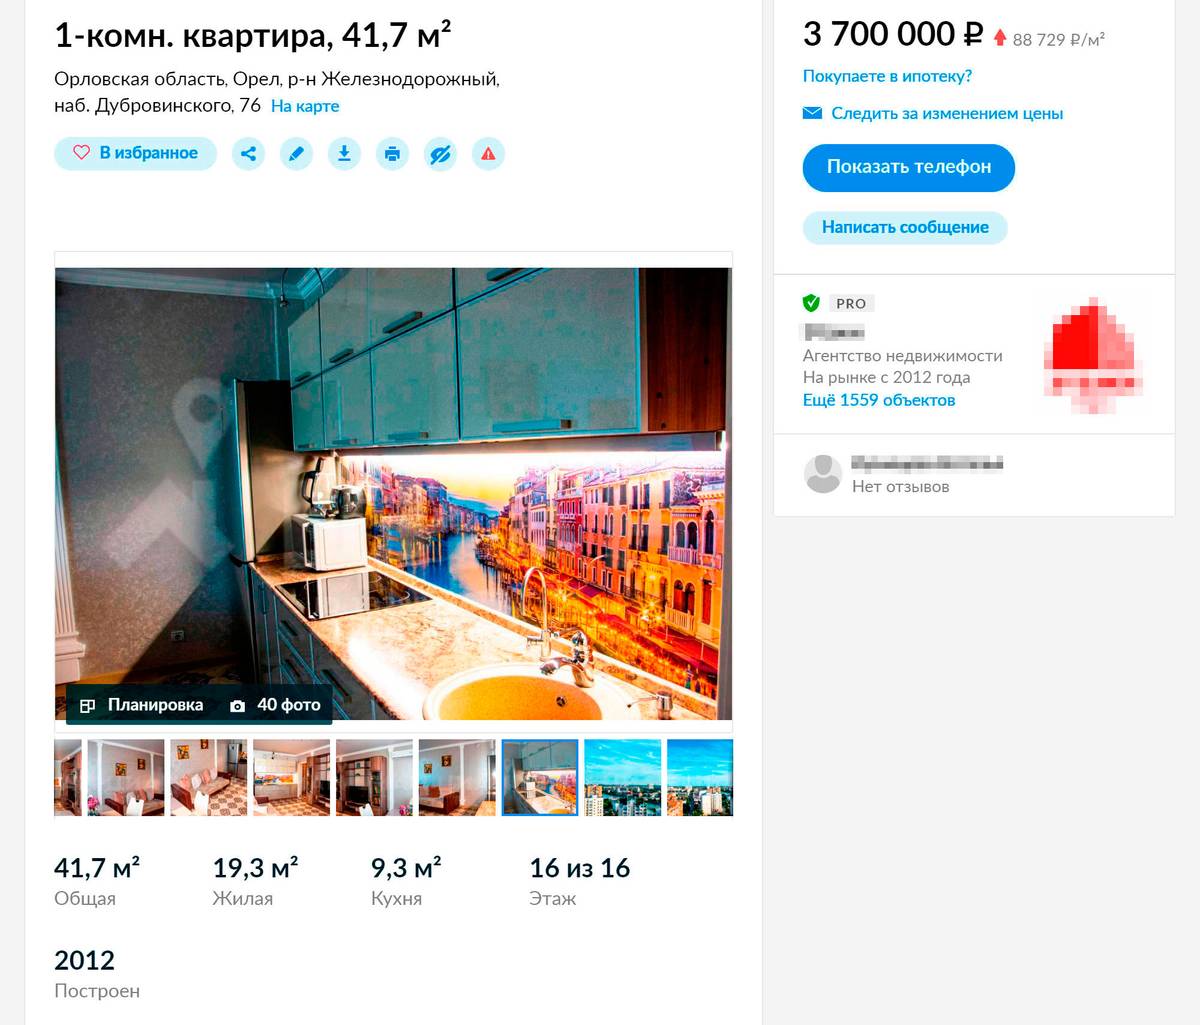 Однокомнатная квартира в новом доме на набережной с современным ремонтом стоит 3,7&nbsp;млн рублей